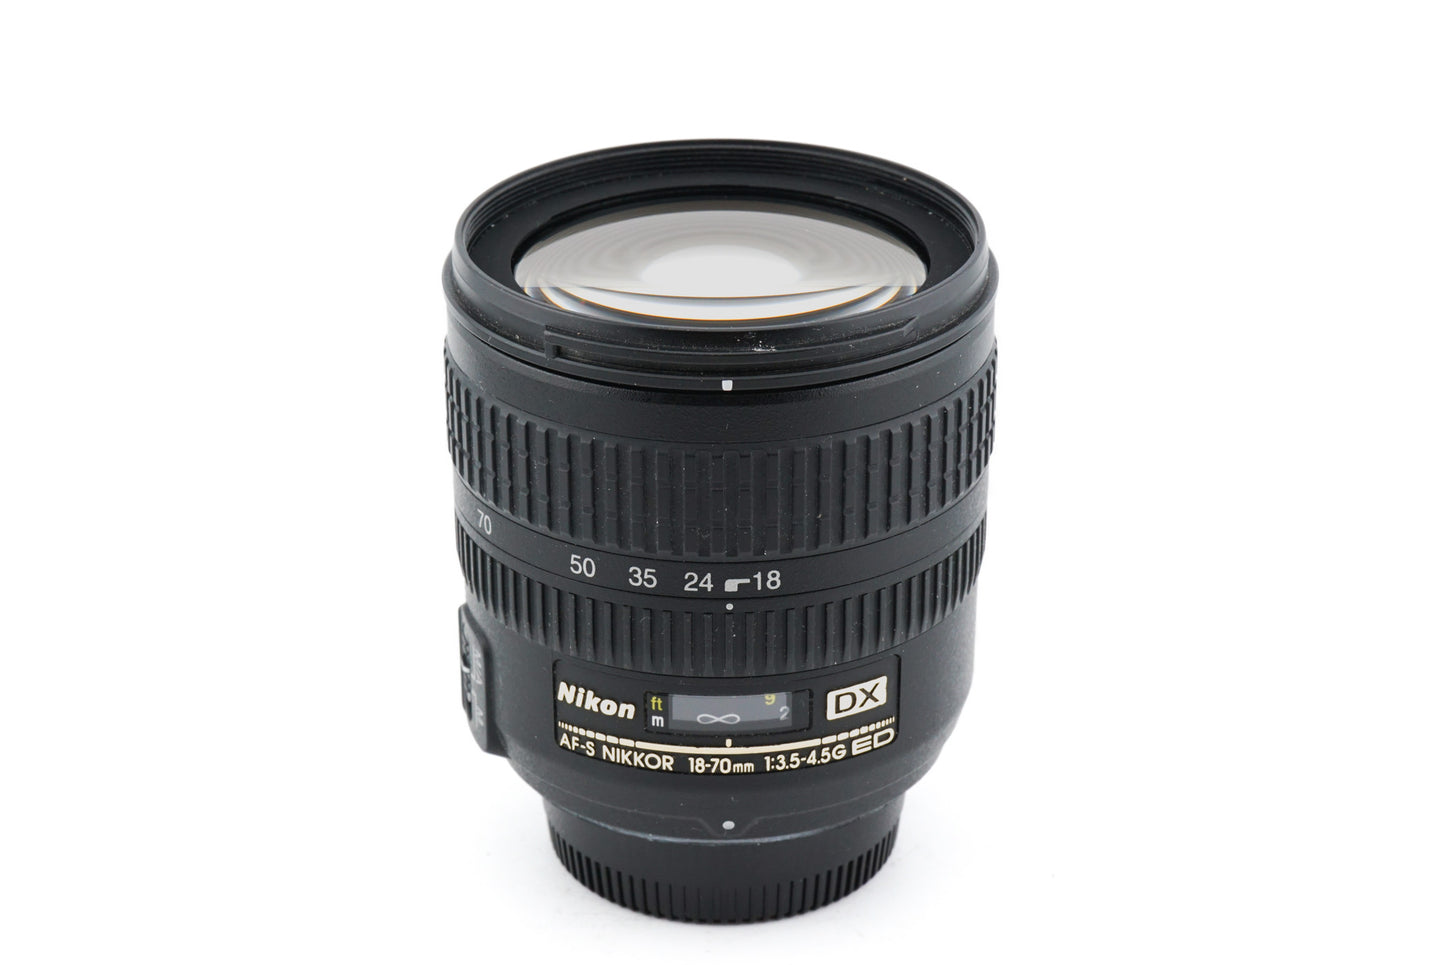 Nikon 18-70mm f3.5-4.5 AF-S Nikkor G ED - Lens